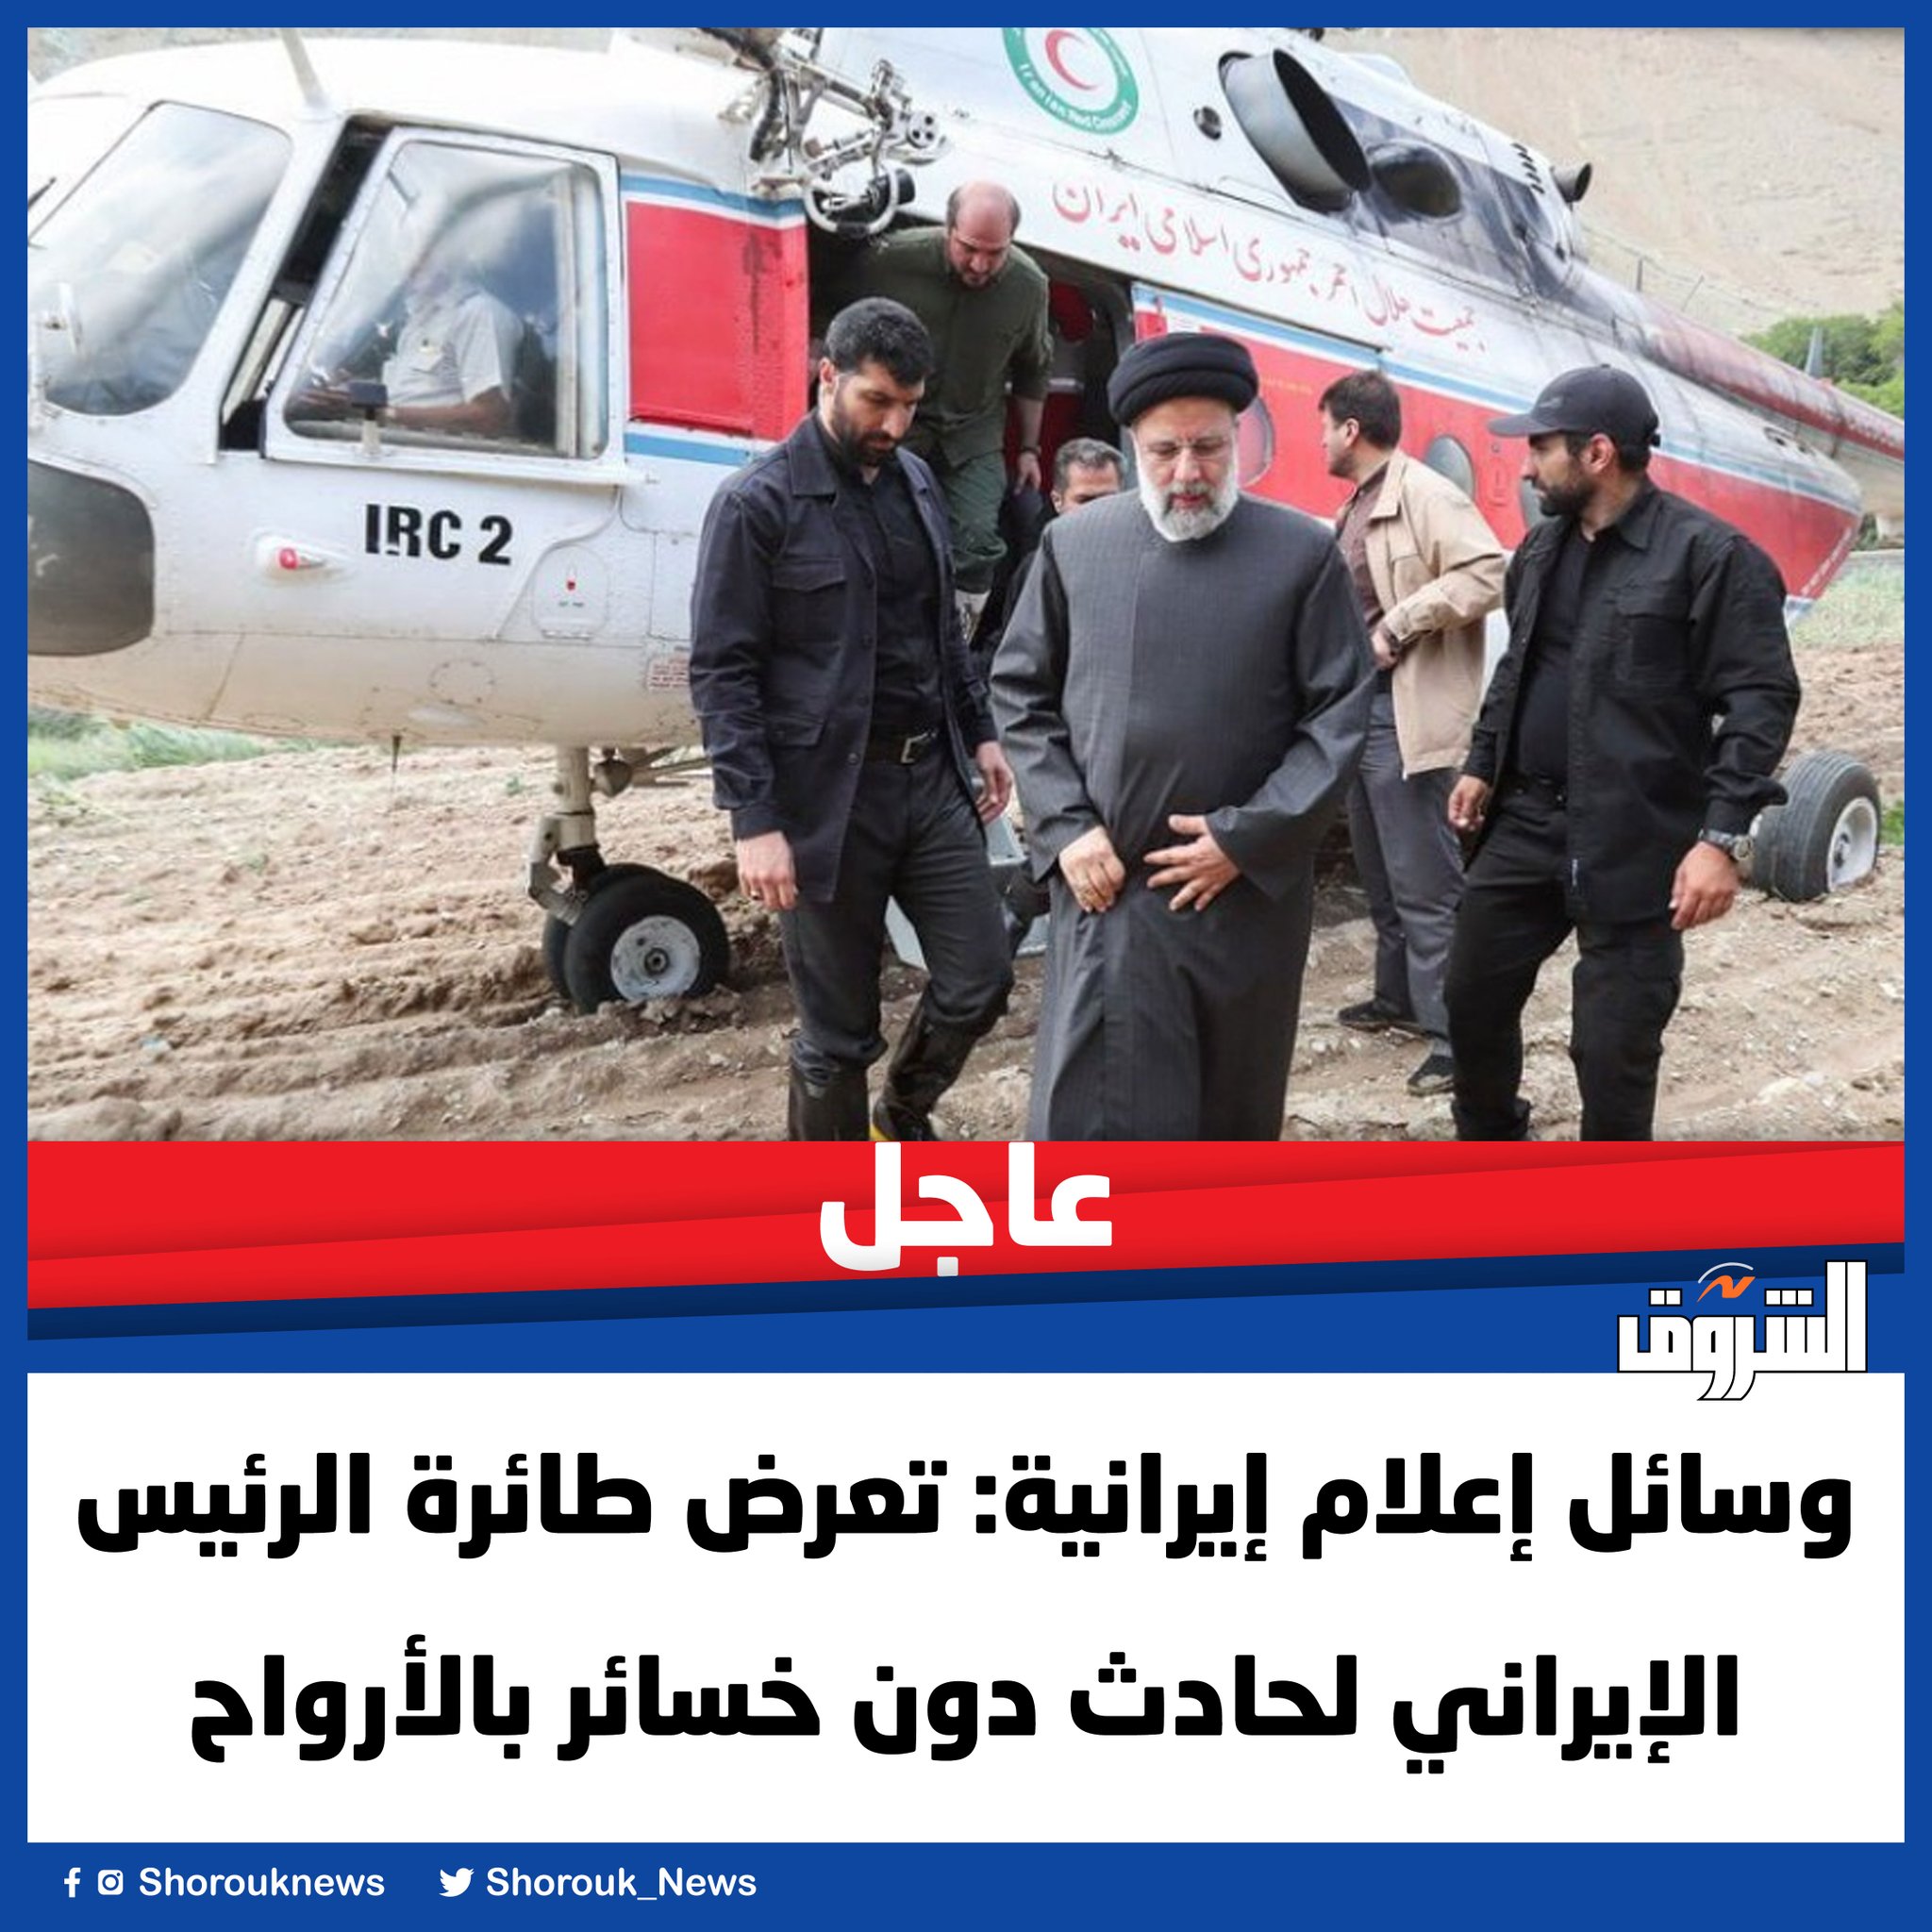 وسائل إعلام إيرانية: تعرض طائرة الرئيس الإيراني لحادث دون خسائر بالأرواح 